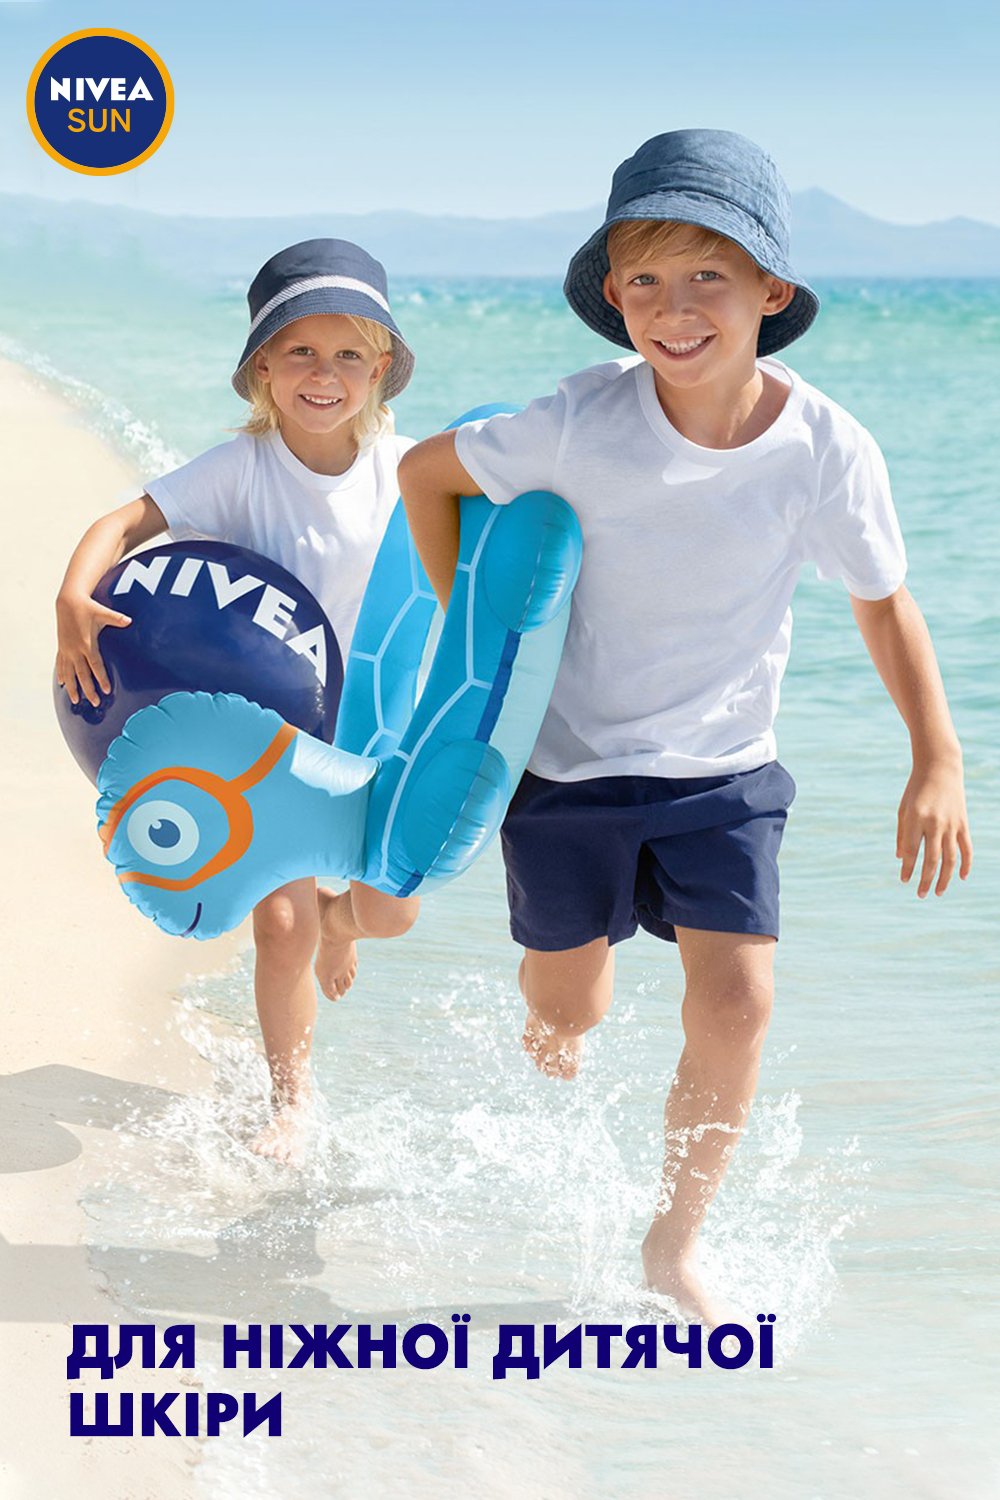 Детский солнцезащитный лосьон Nivea Sun Играй и купайся SPF 50+ для детской кожи от вредных UVA/UVB-лучей и ожогов, 100 мл - фото 7